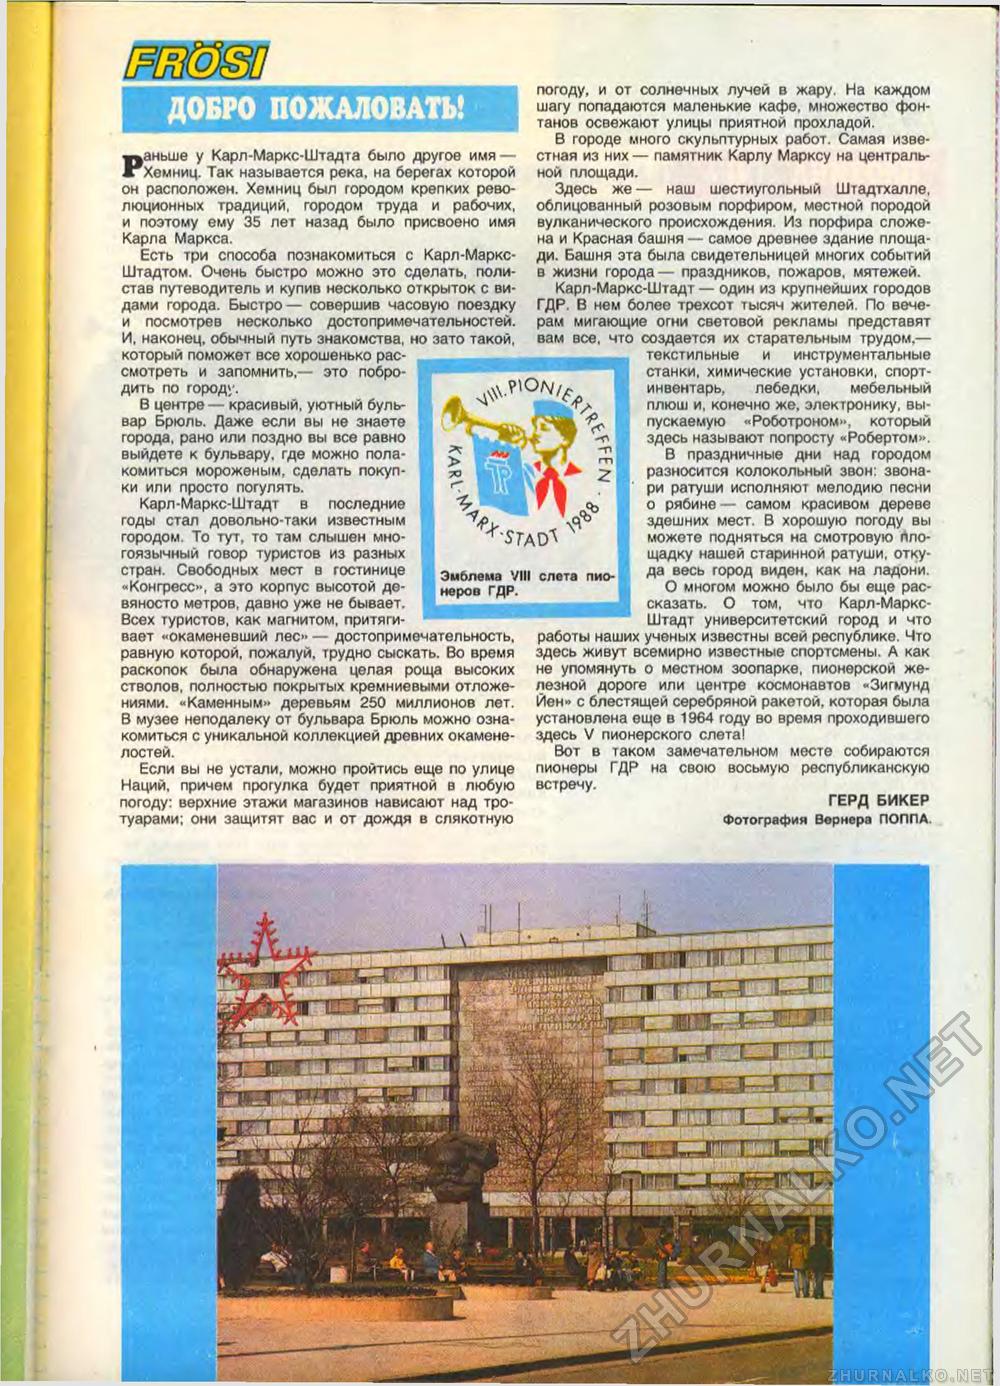  1988-08,  25